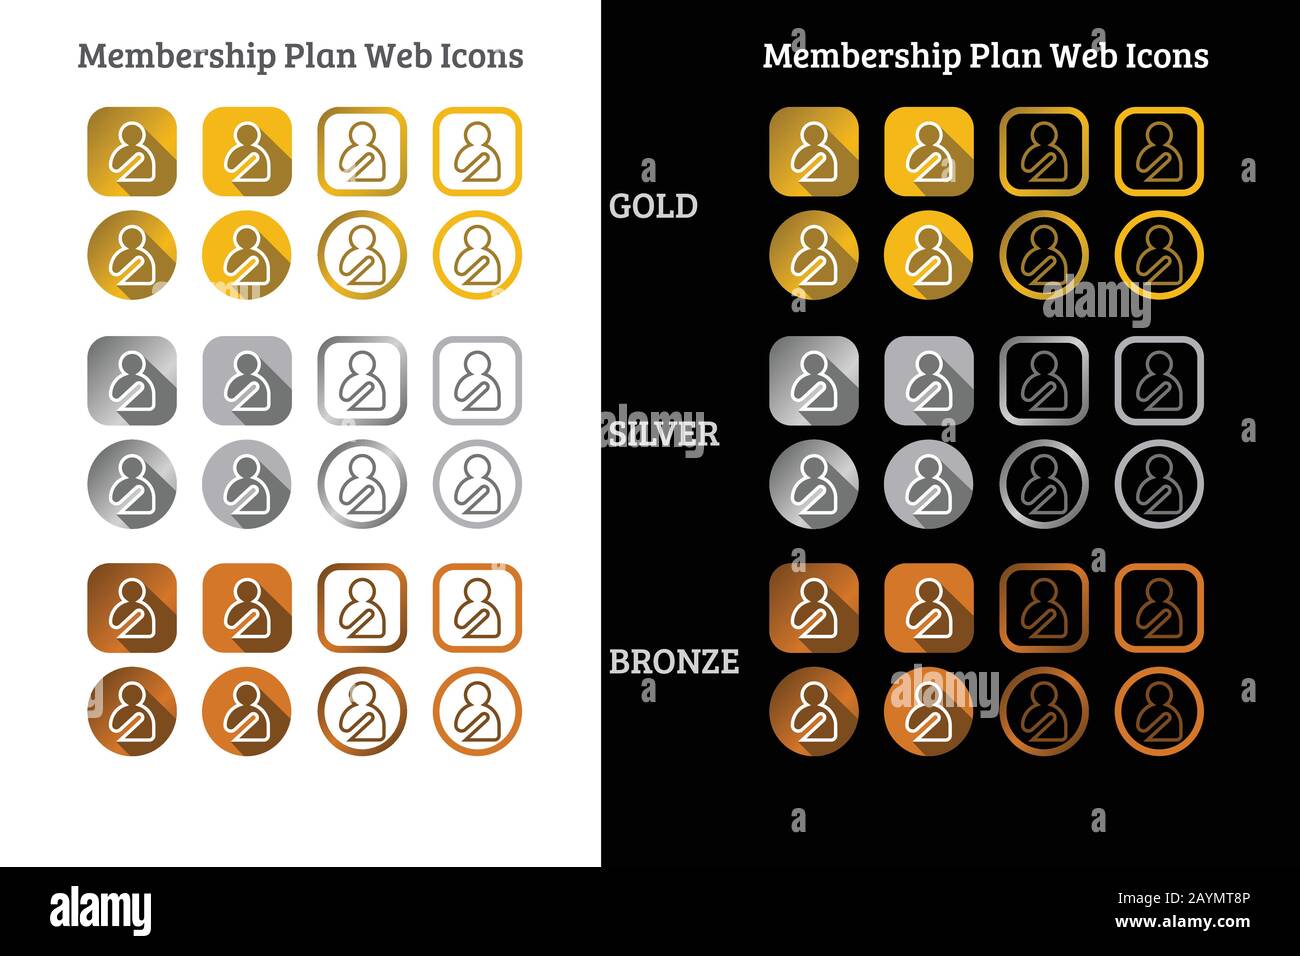 Webicon-Design für Mitgliedschaftspläne in Gold-, Silber- und Bronze-Farbe Stock Vektor